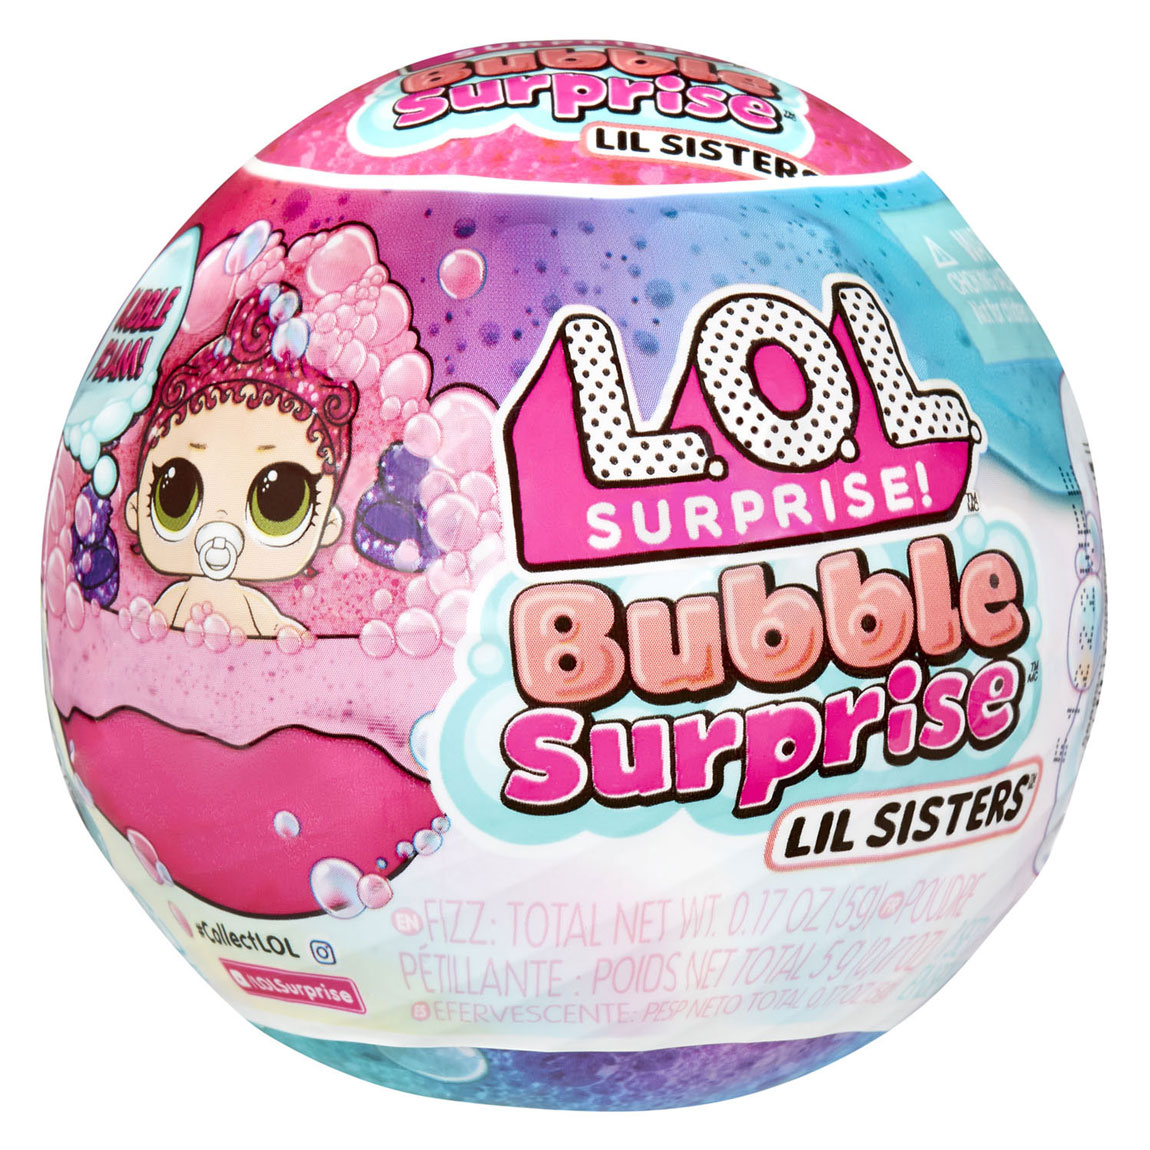 MDR. Surprise Bubble Surprise Lil Sisters Mini Pop